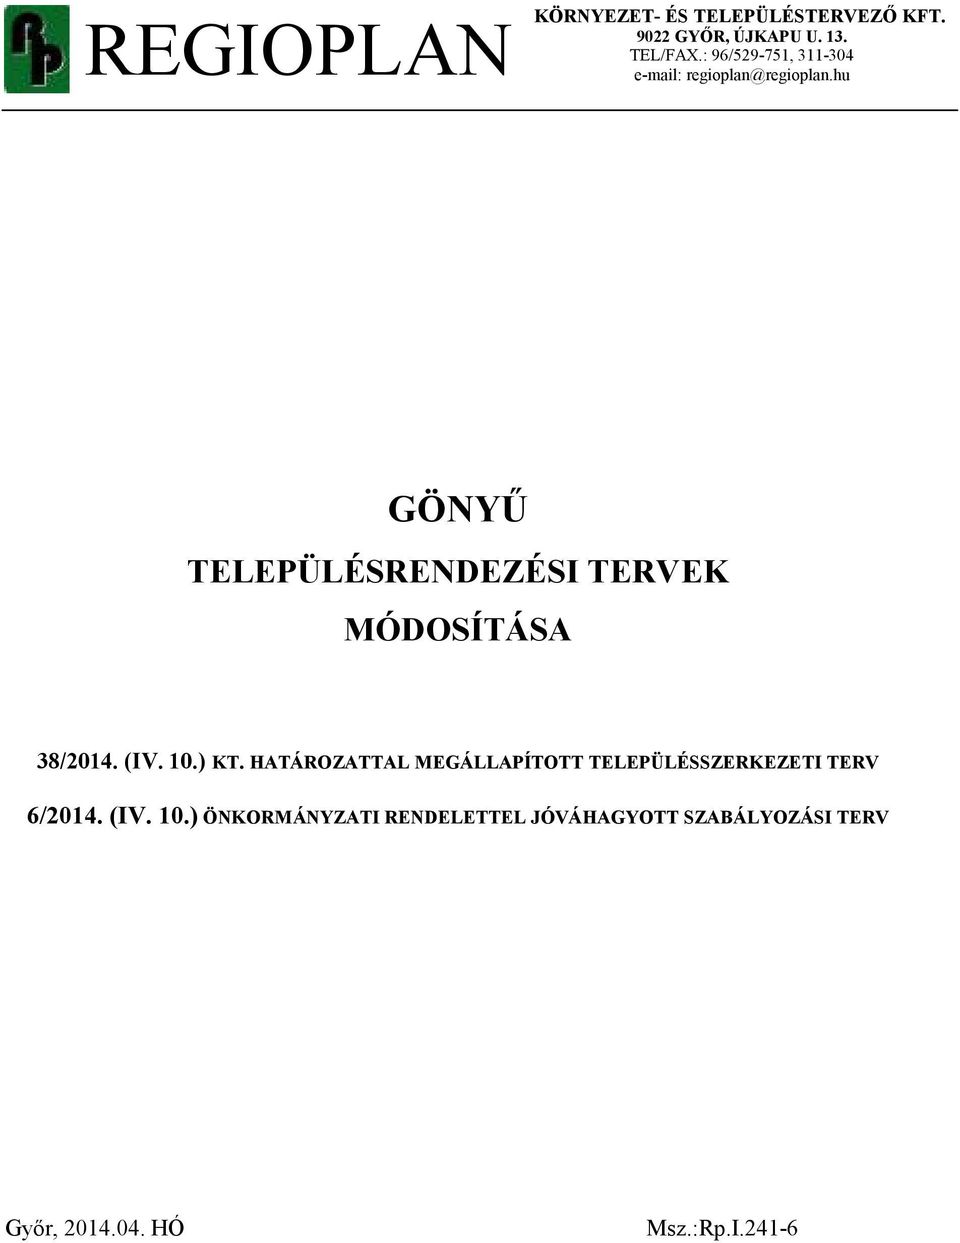 hu GÖNYŰ TELEPÜLÉSRENDEZÉSI TERVEK MÓDOSÍTÁSA 38/2014. (IV. 10.) KT.